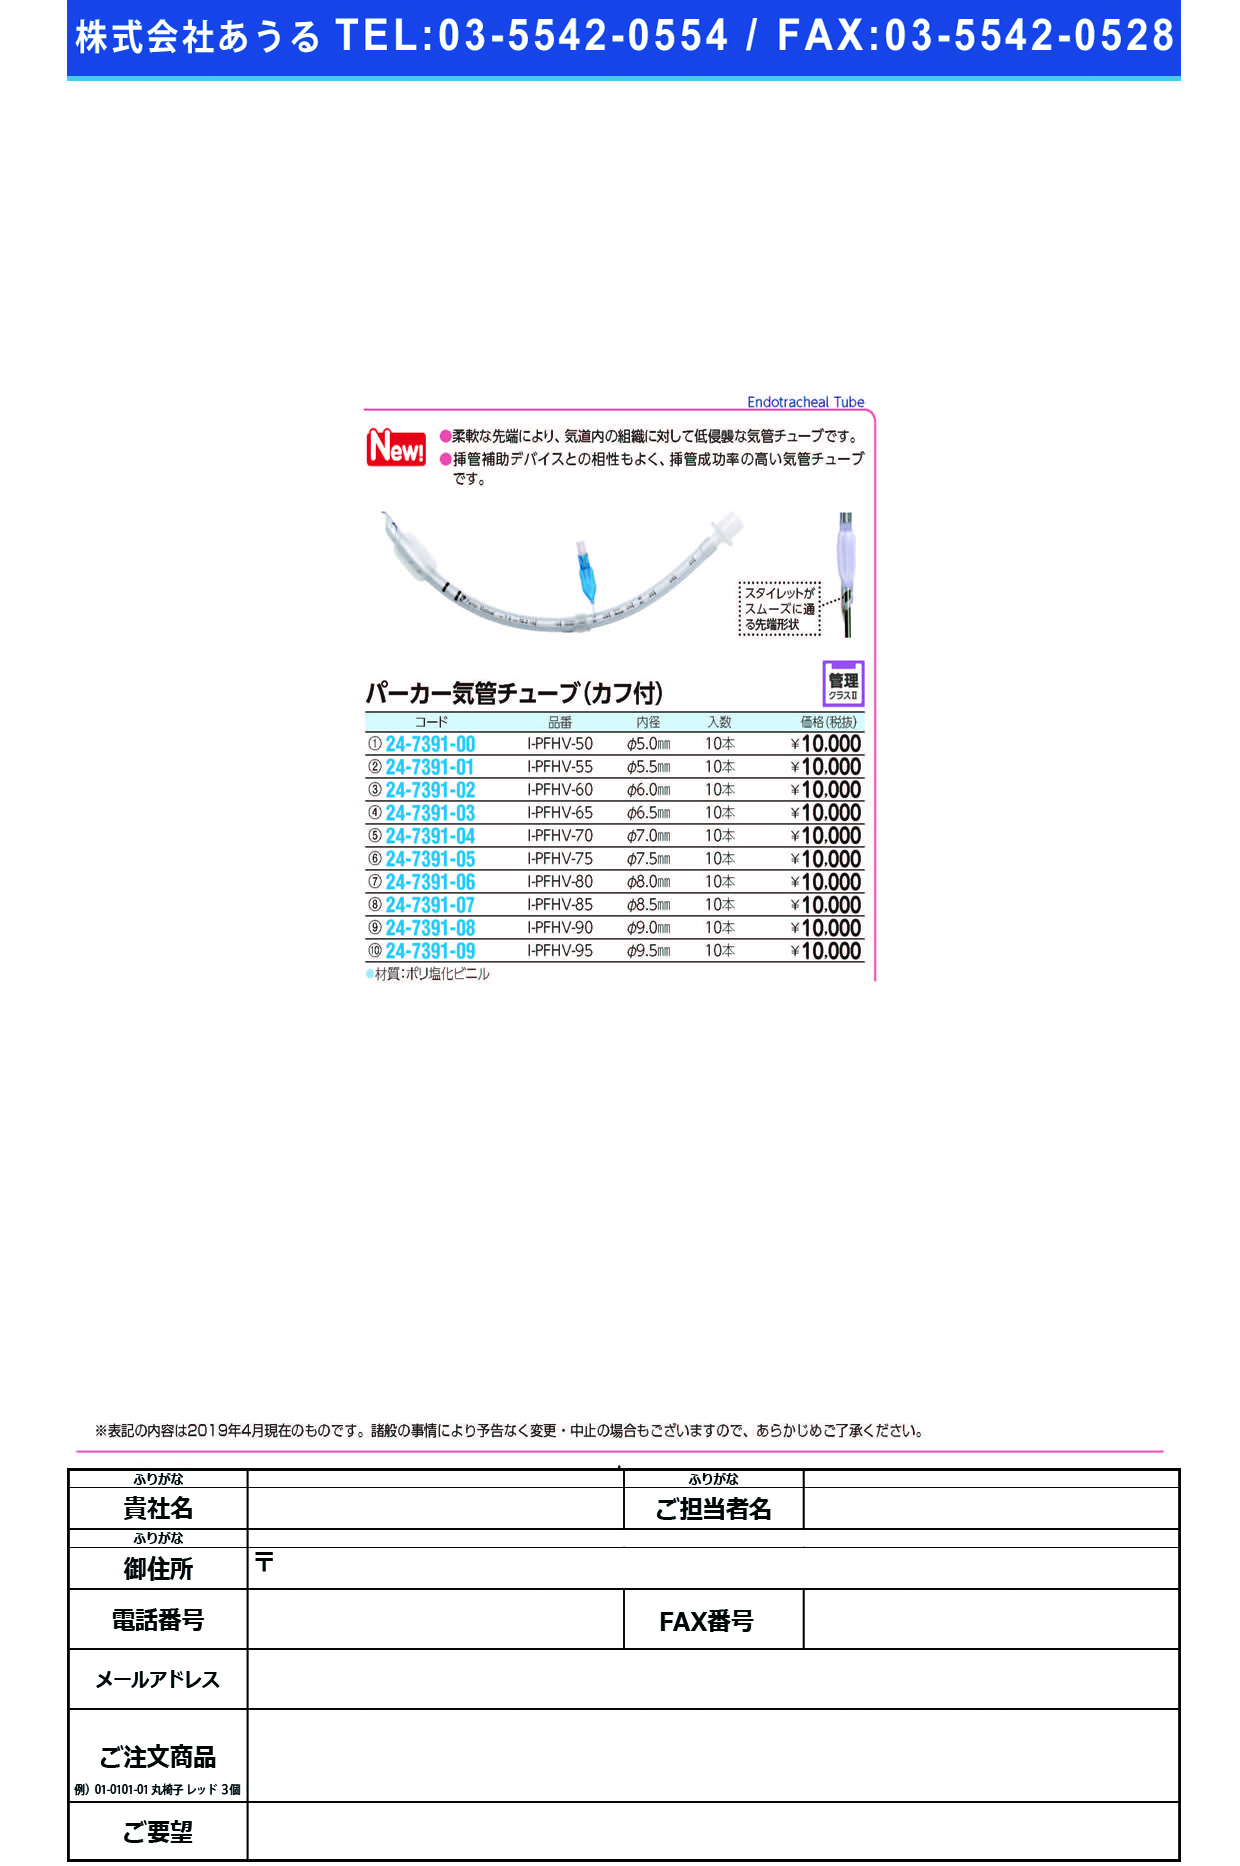 (24-7391-03)パーカー気管チューブI-PFHV-65(6.5MM)10ﾎﾝ ﾊﾟｰｶｰｷｶﾝﾁｭｰﾌﾞ(日本メディカルネクスト)【1箱単位】【2019年カタログ商品】